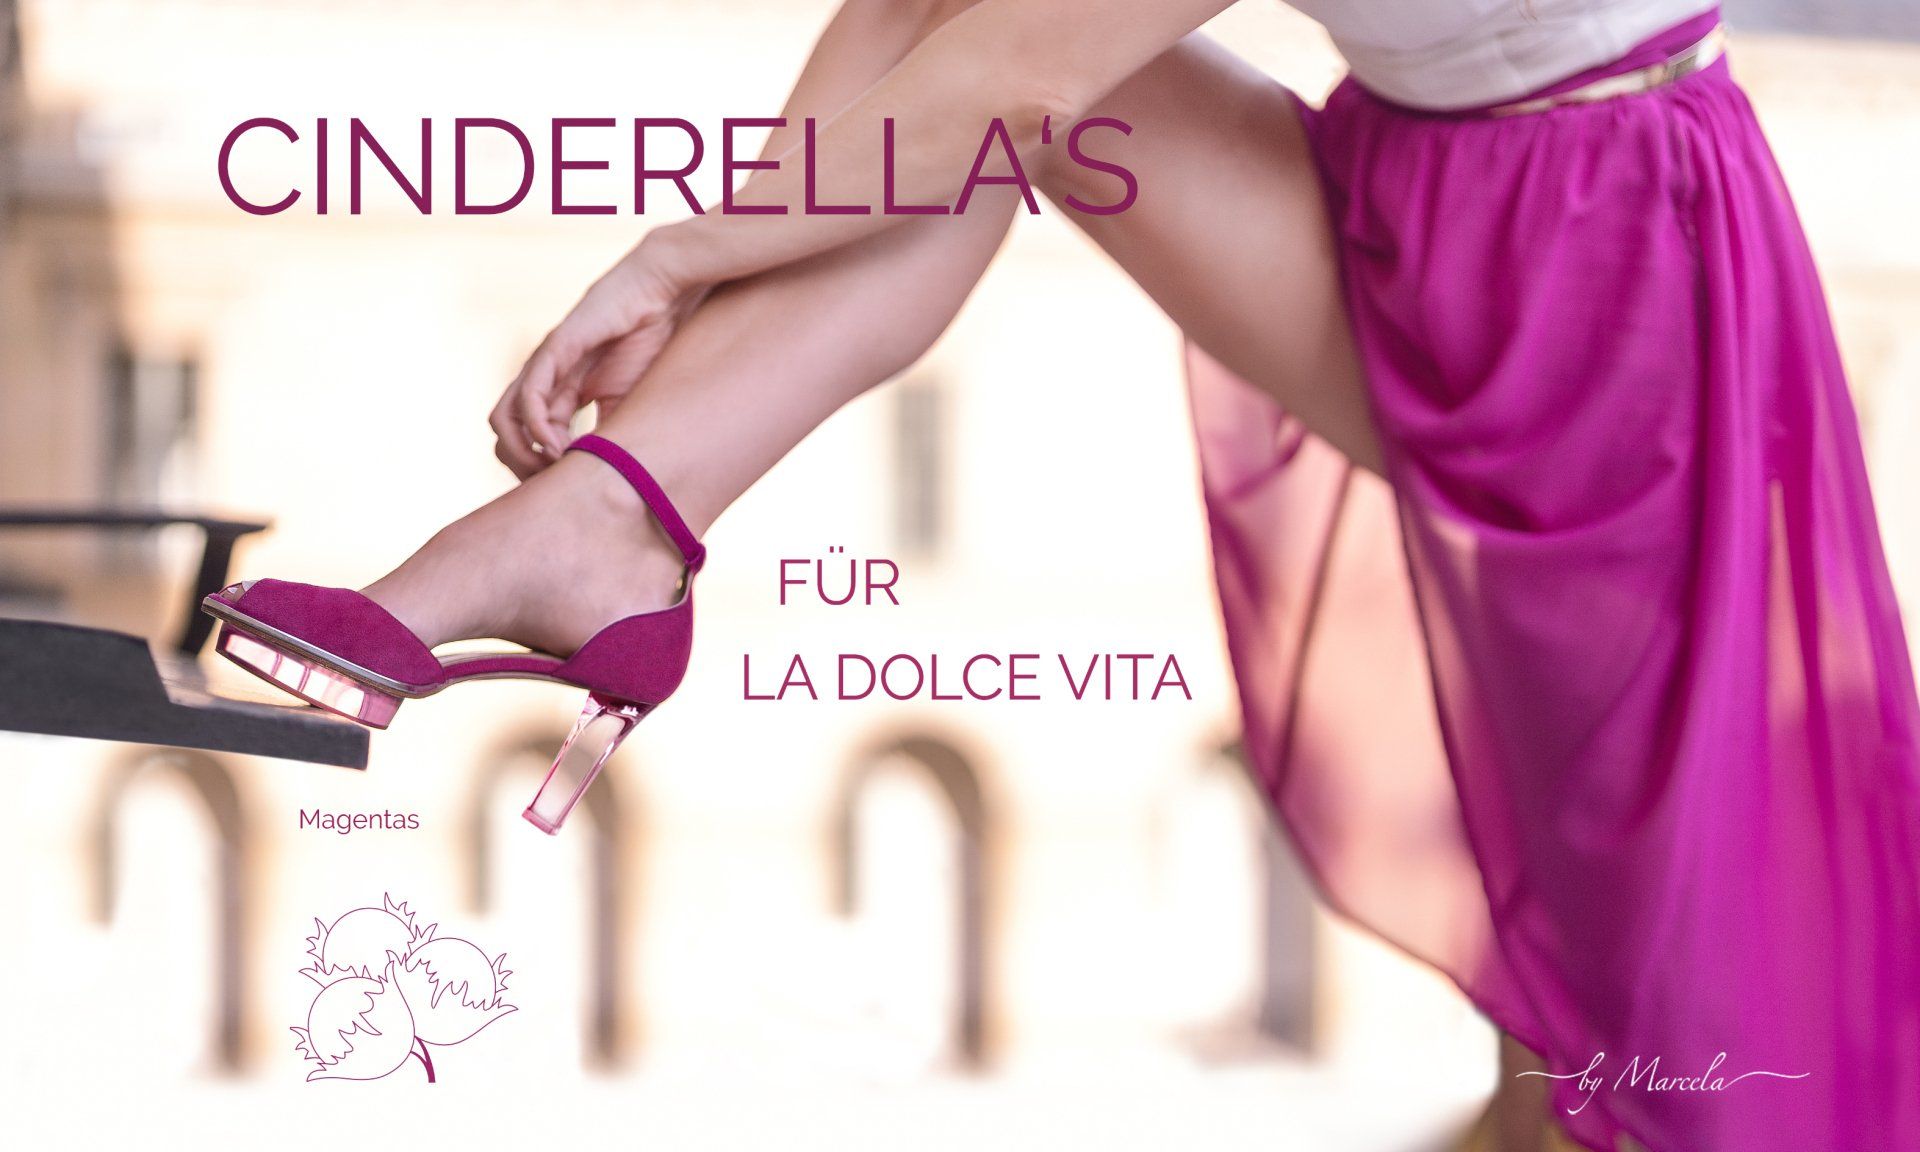 Cinderellas by Marcela, Cinderellas Schuhe in Rosa pink mit transparentem high heel namens Magentas und blaues Dirndl von Astrid Söll